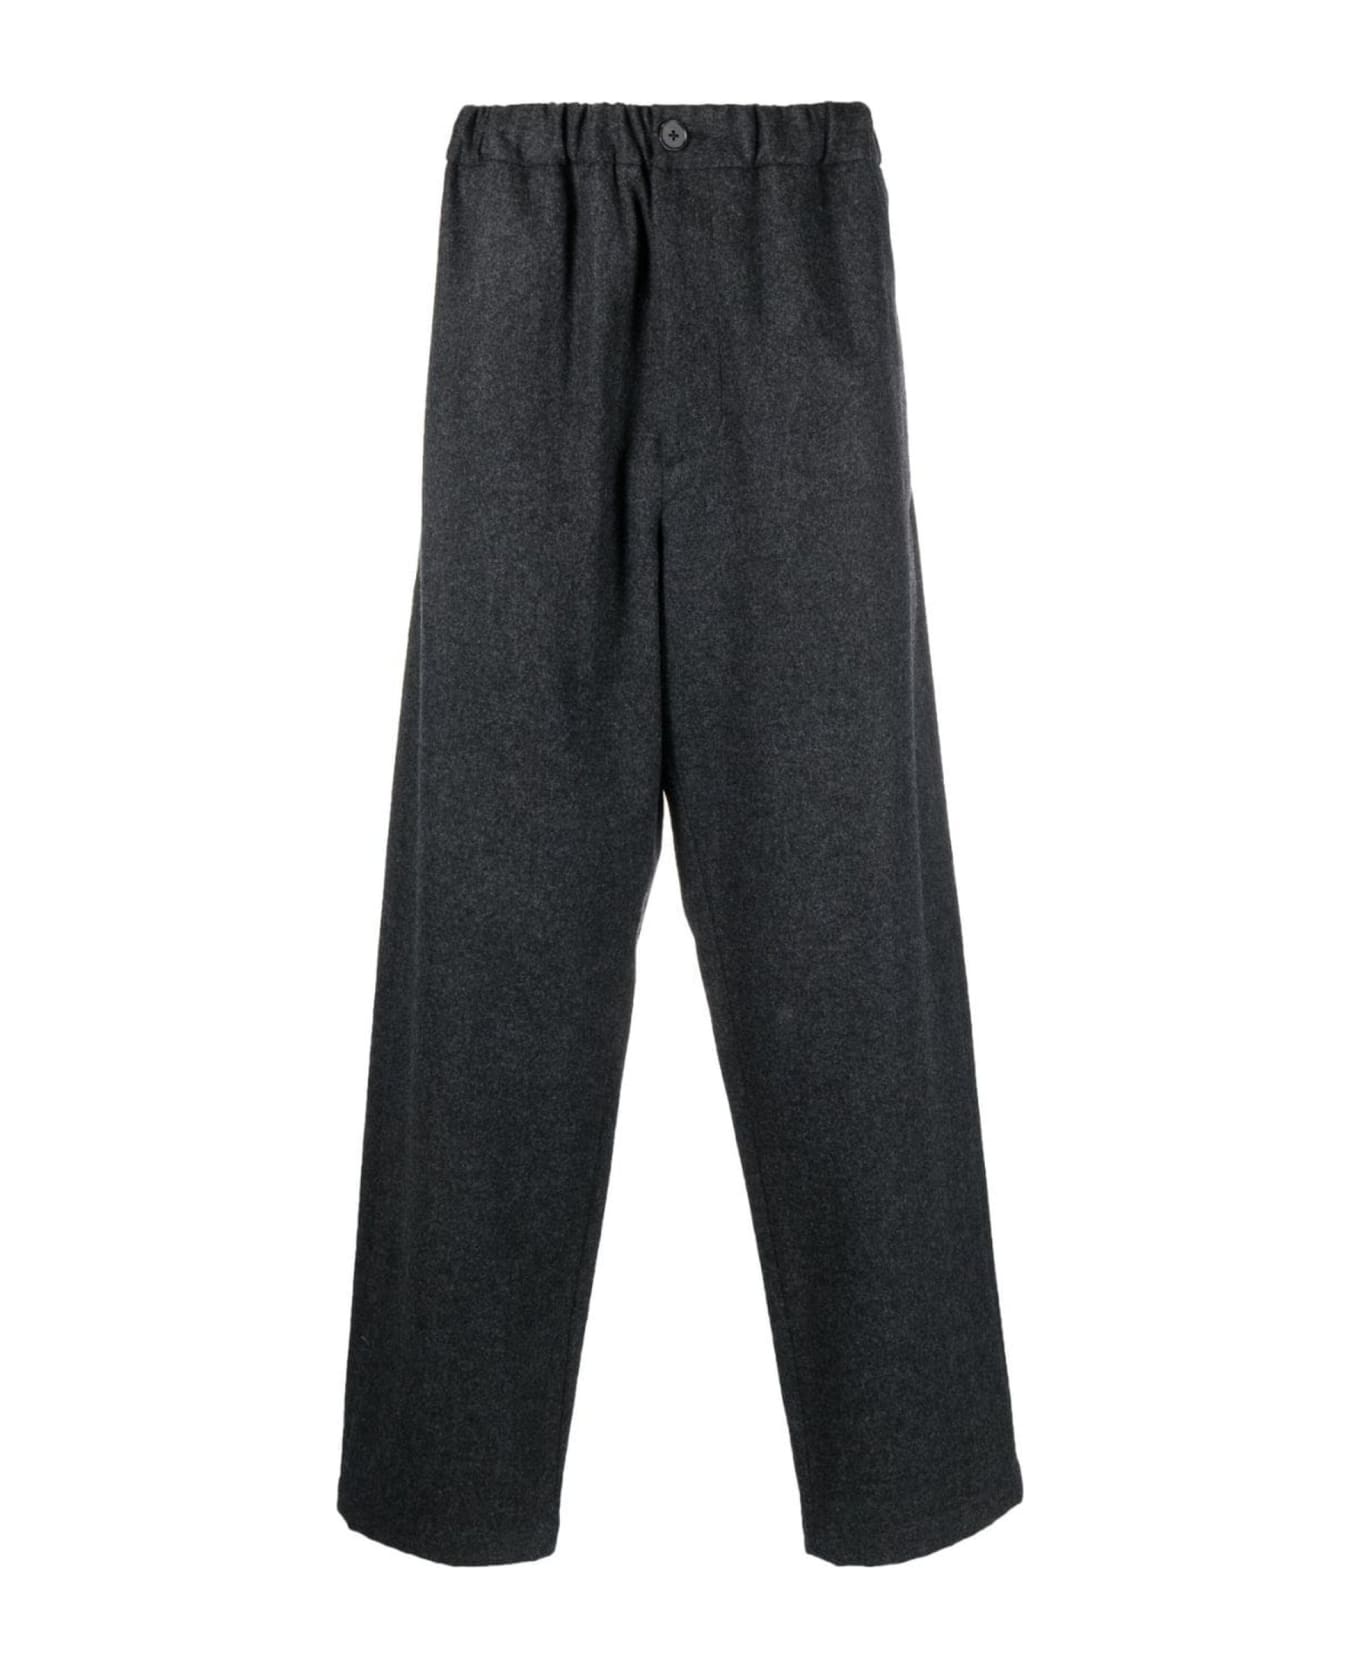 Jil Sander Grey Cotton Trousers - Grey